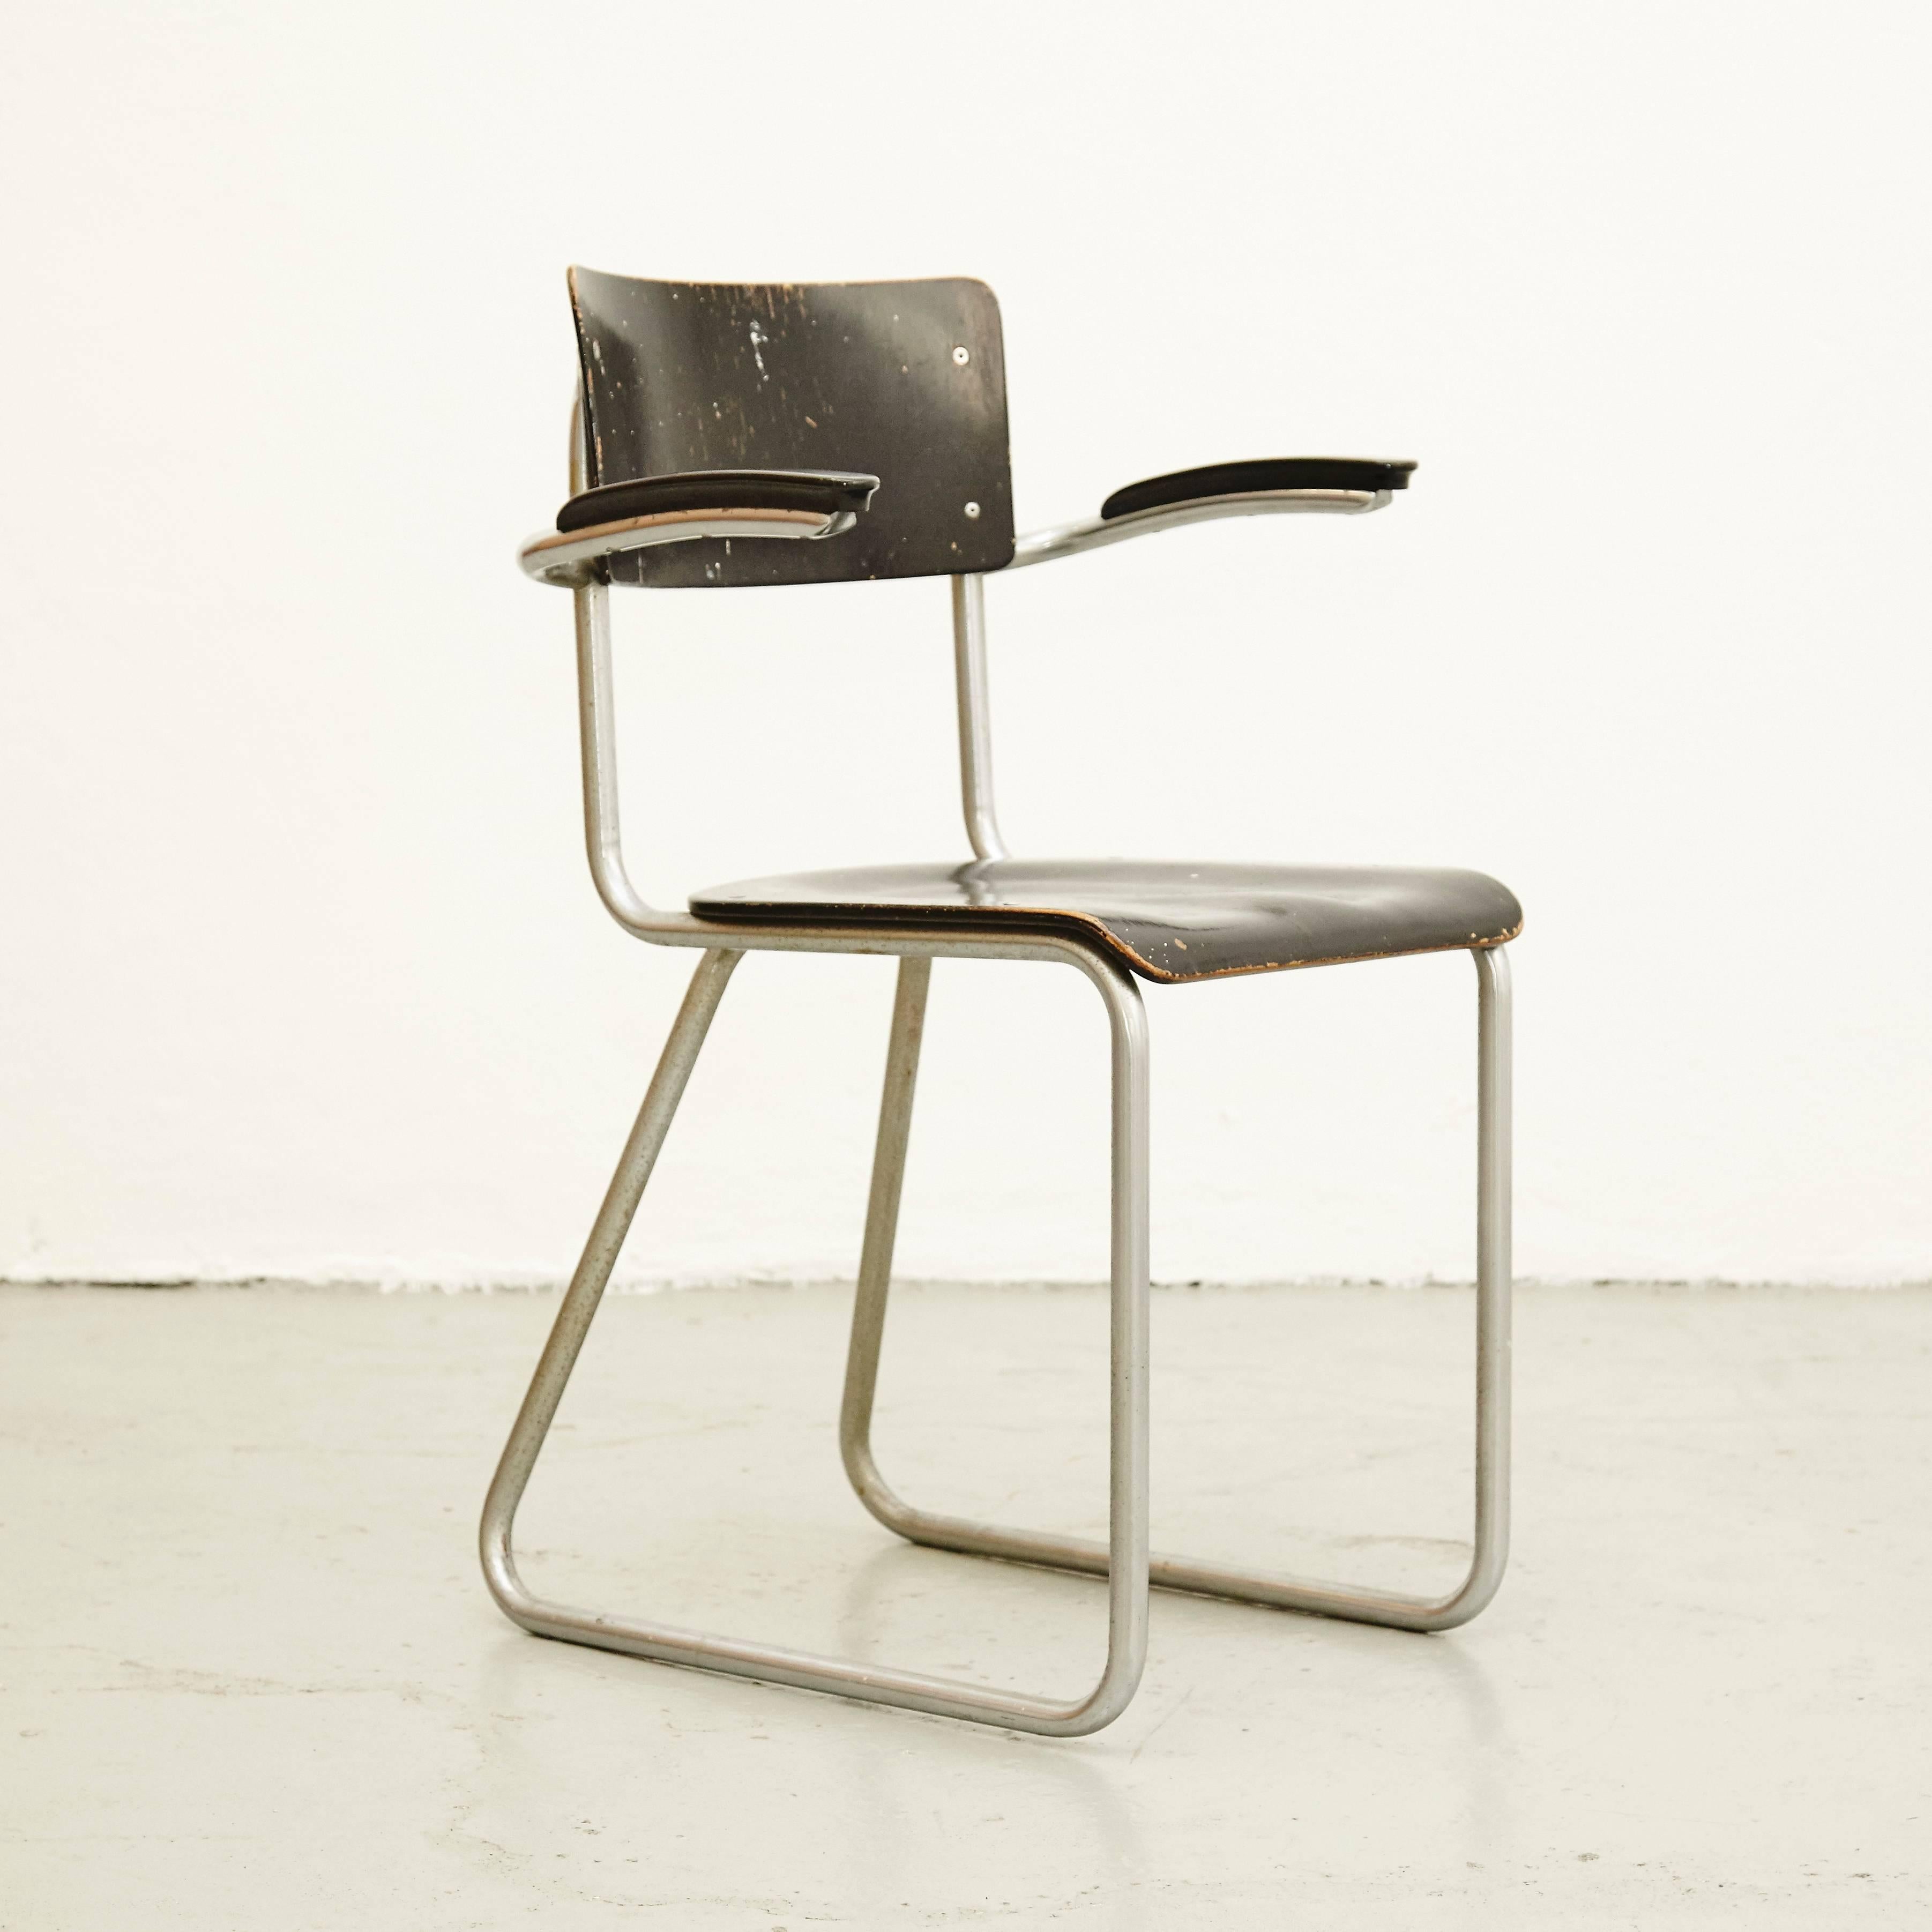 Mid-20th Century Bauhaus Chair, circa 1930